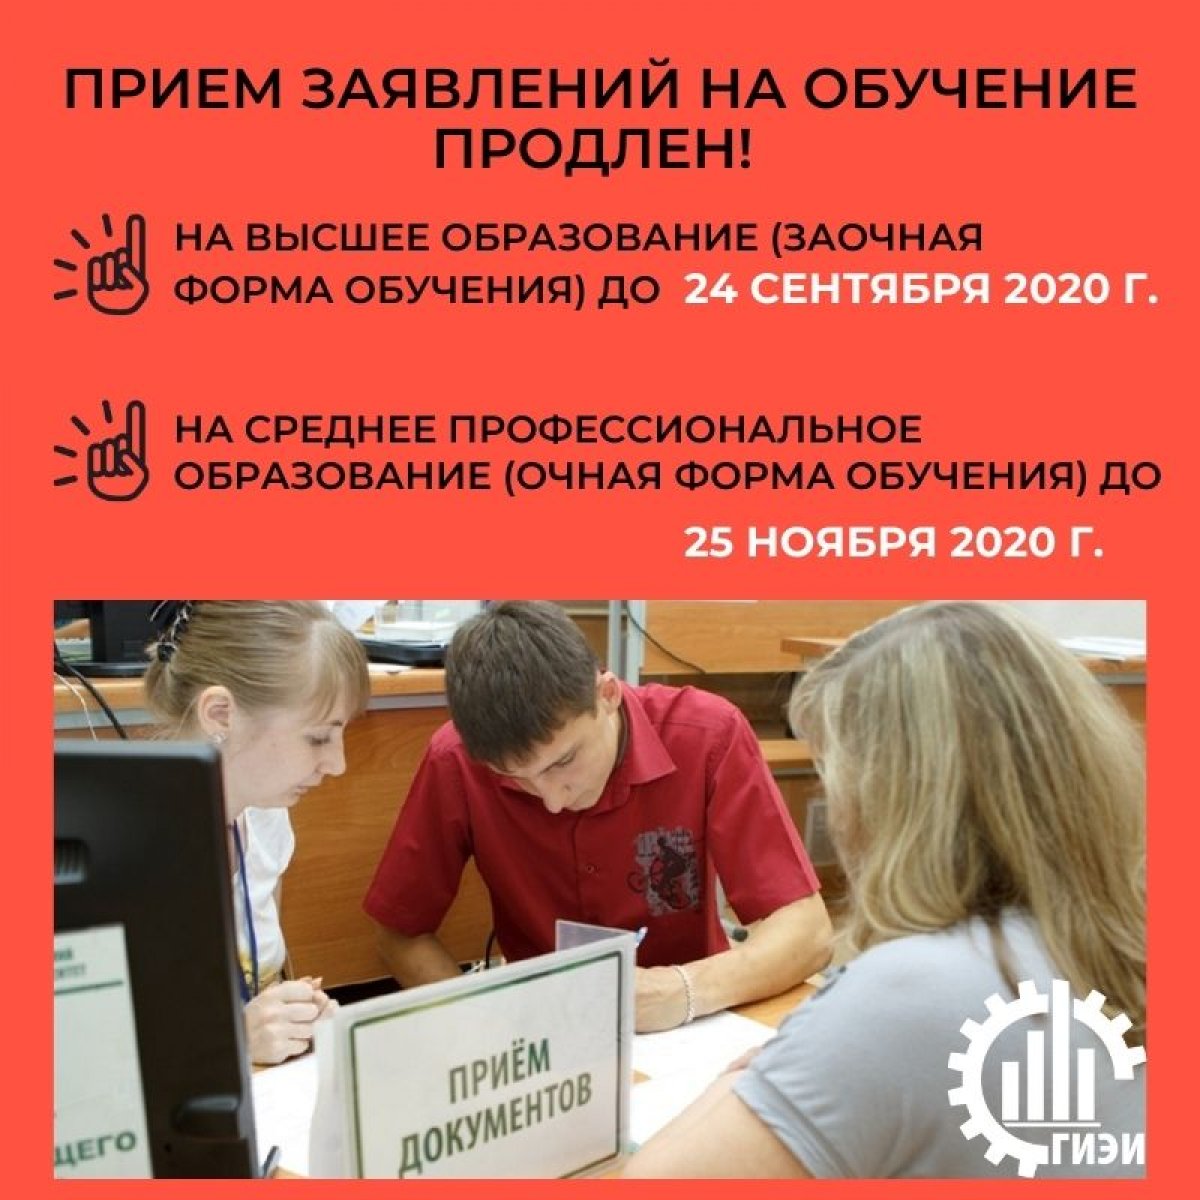 Глазовский филиал ИжГТУ имени М.Т. Калашникова продолжает прием на программы высшего и среднего профессионального образования в 2020 году: